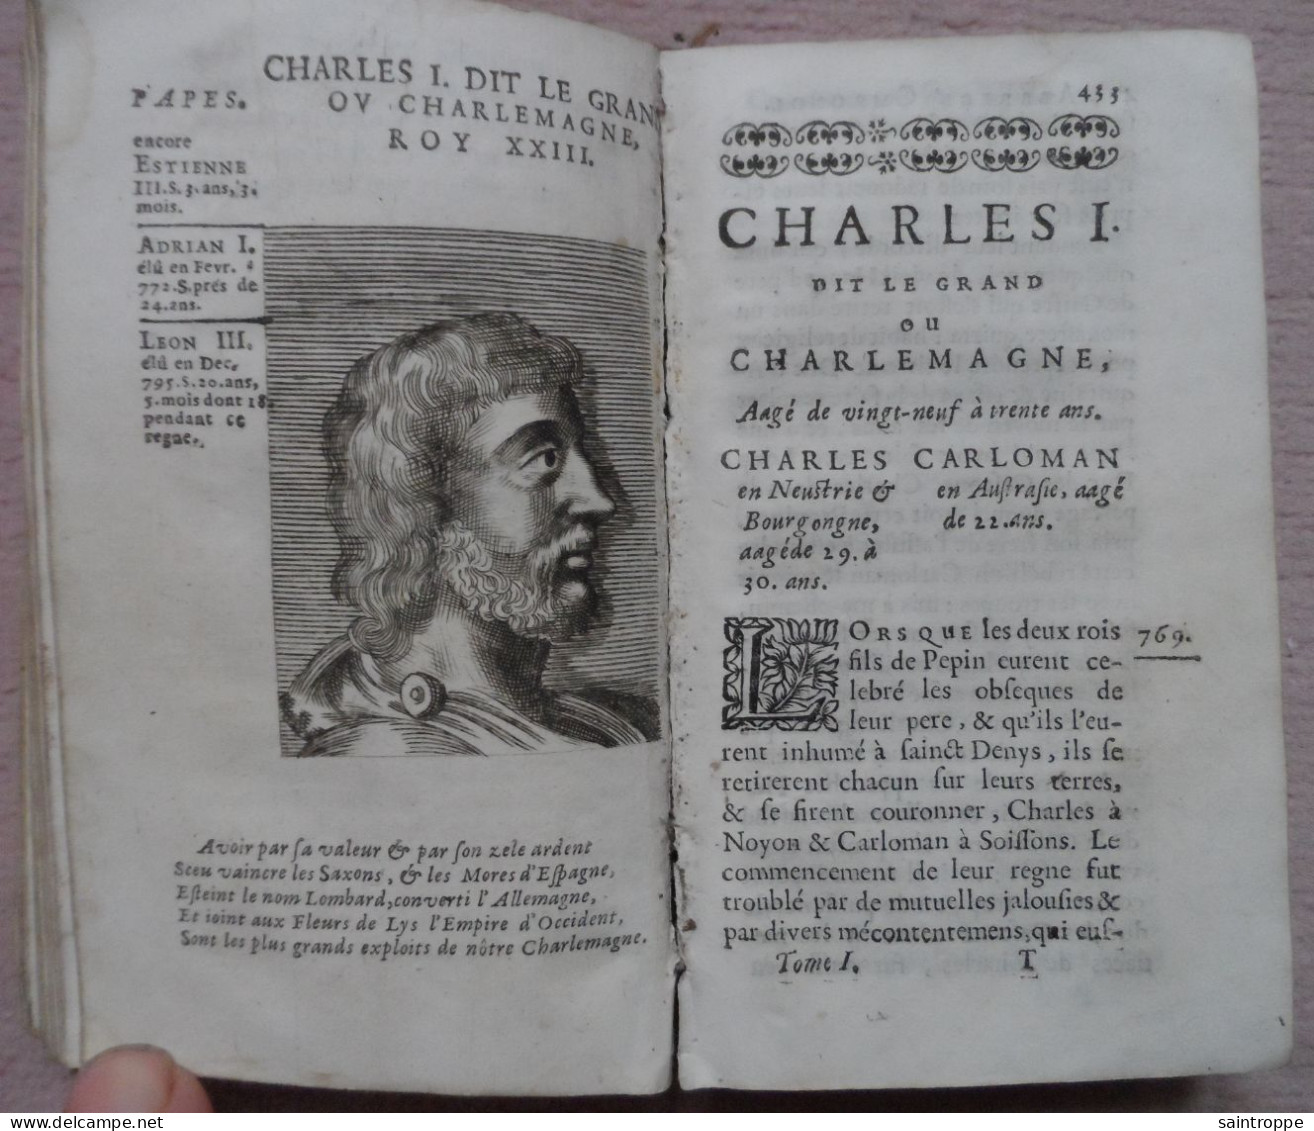 Livre Ancien de 1677.L'Histoire de France.Abrégé Chronologique.Tome Premier.Par le sieur de Mezeray.